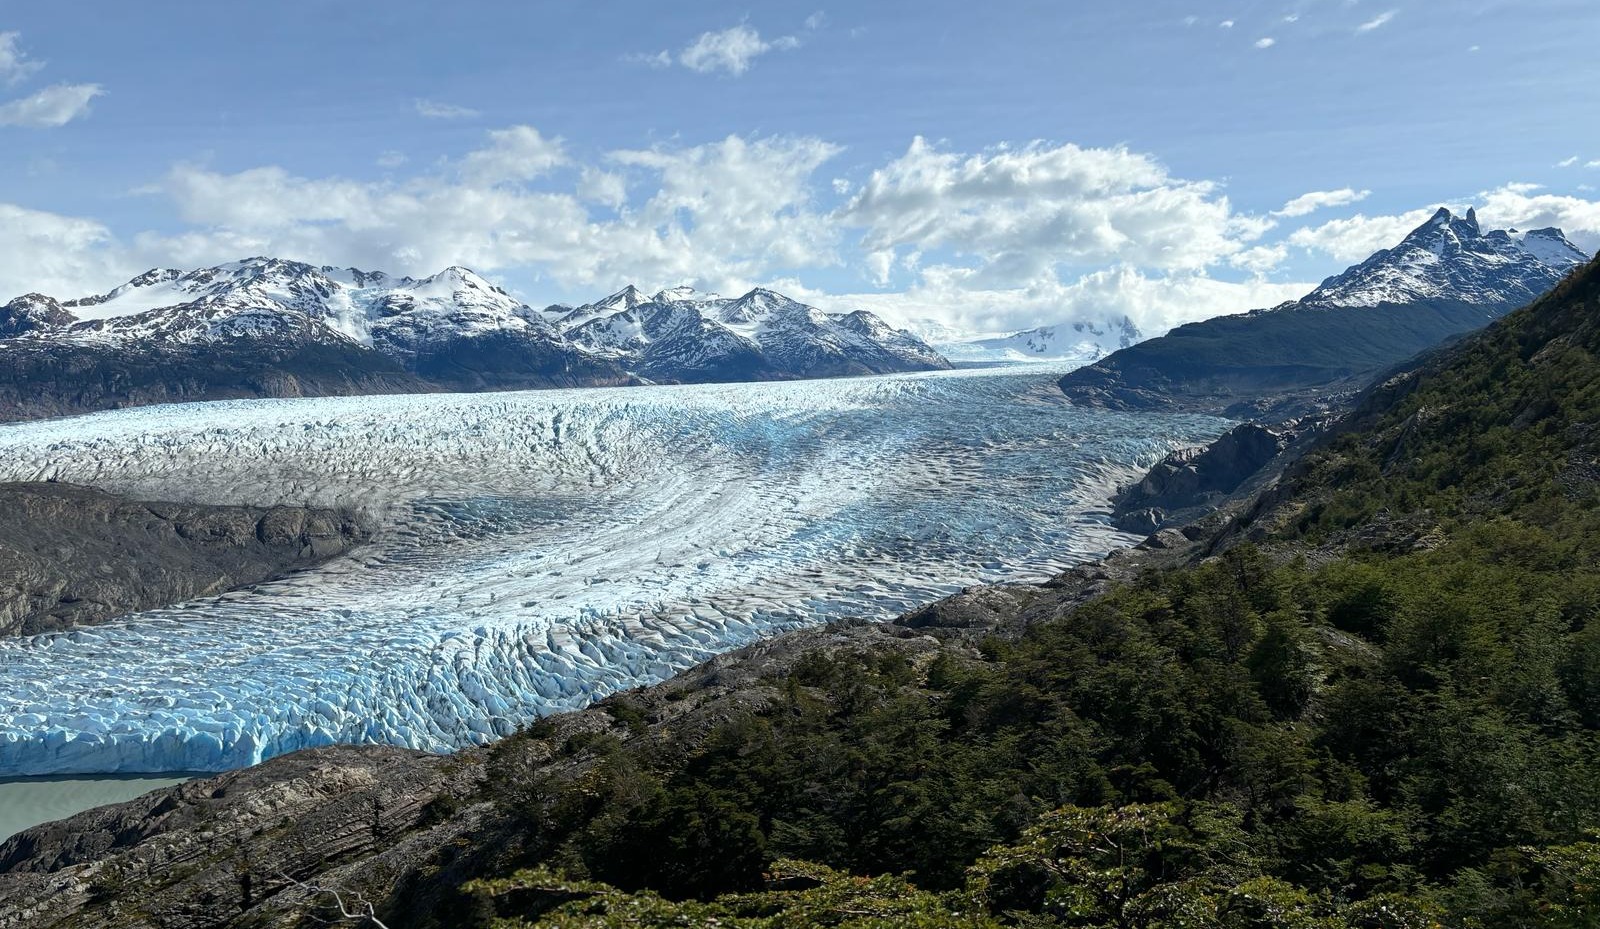 Glacier Grey